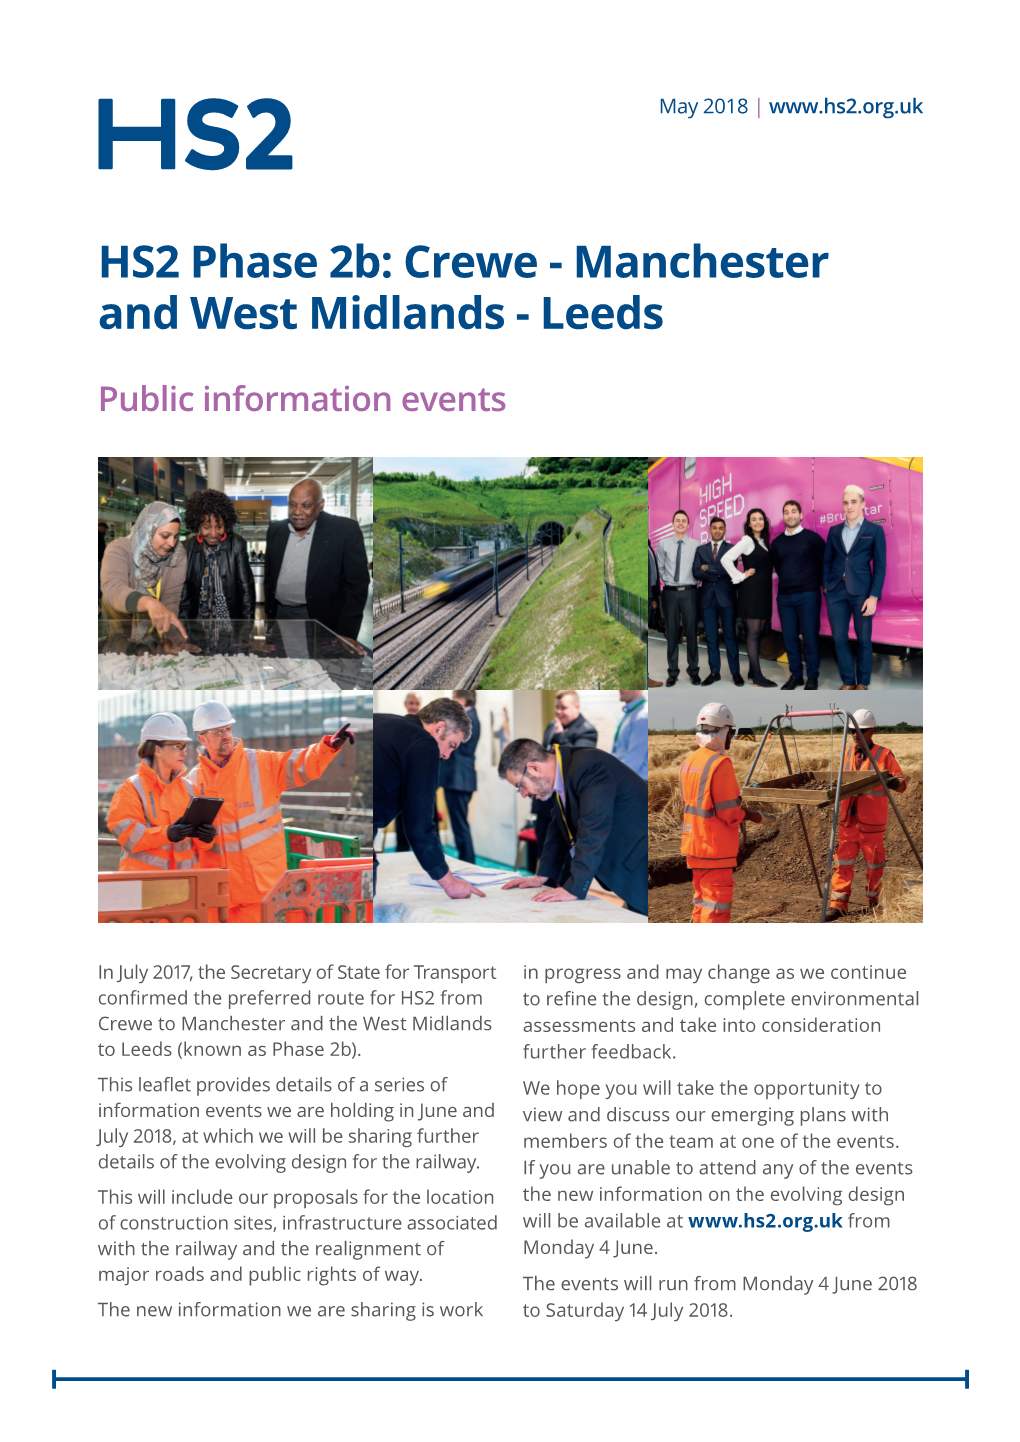 HS2 Public Information Events